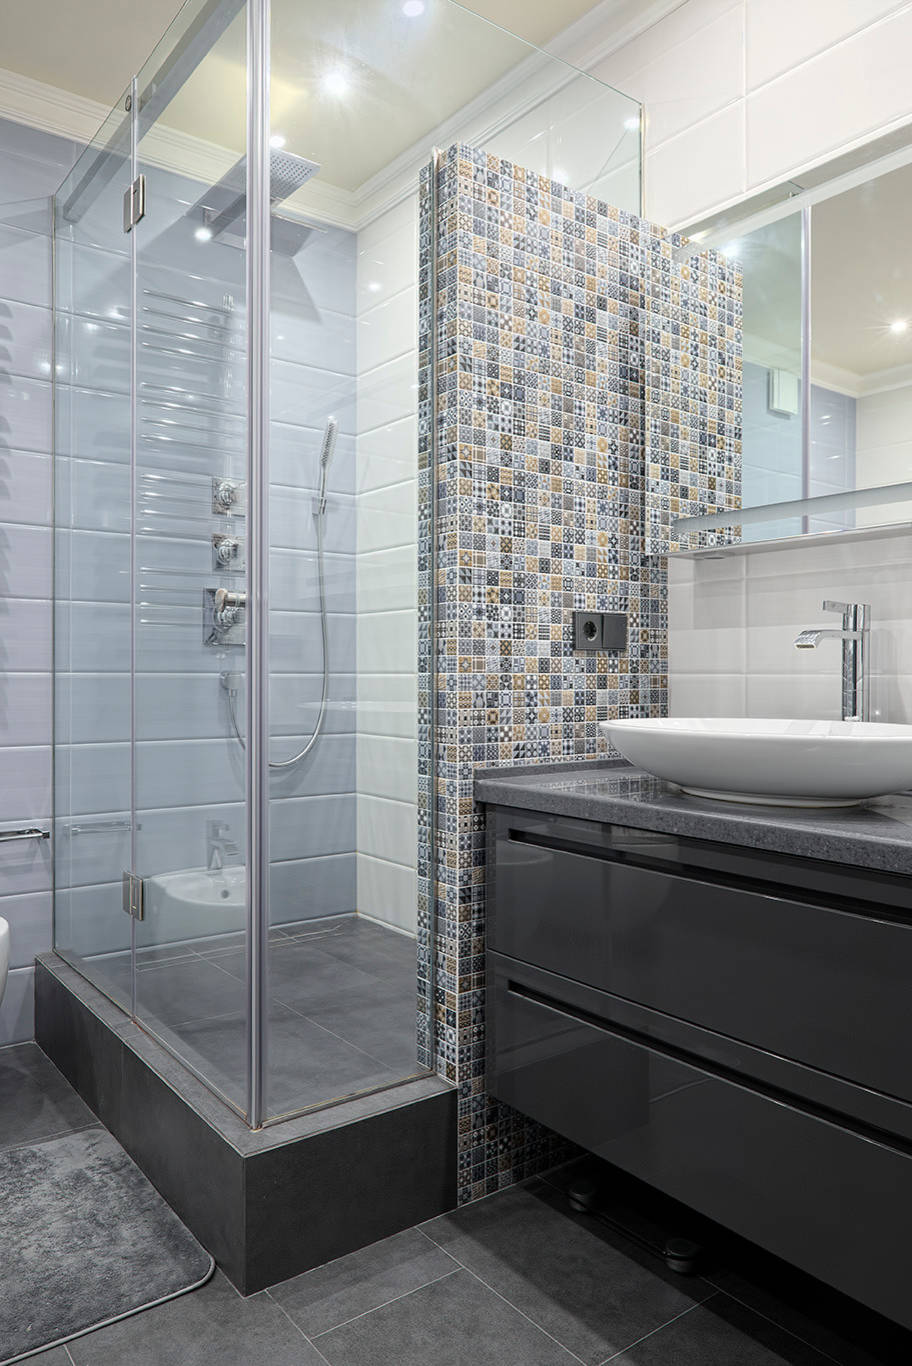 Badezimmer mit blauen Mosaikfliesen, … – Bild kaufen – 711437 ❘ living4media